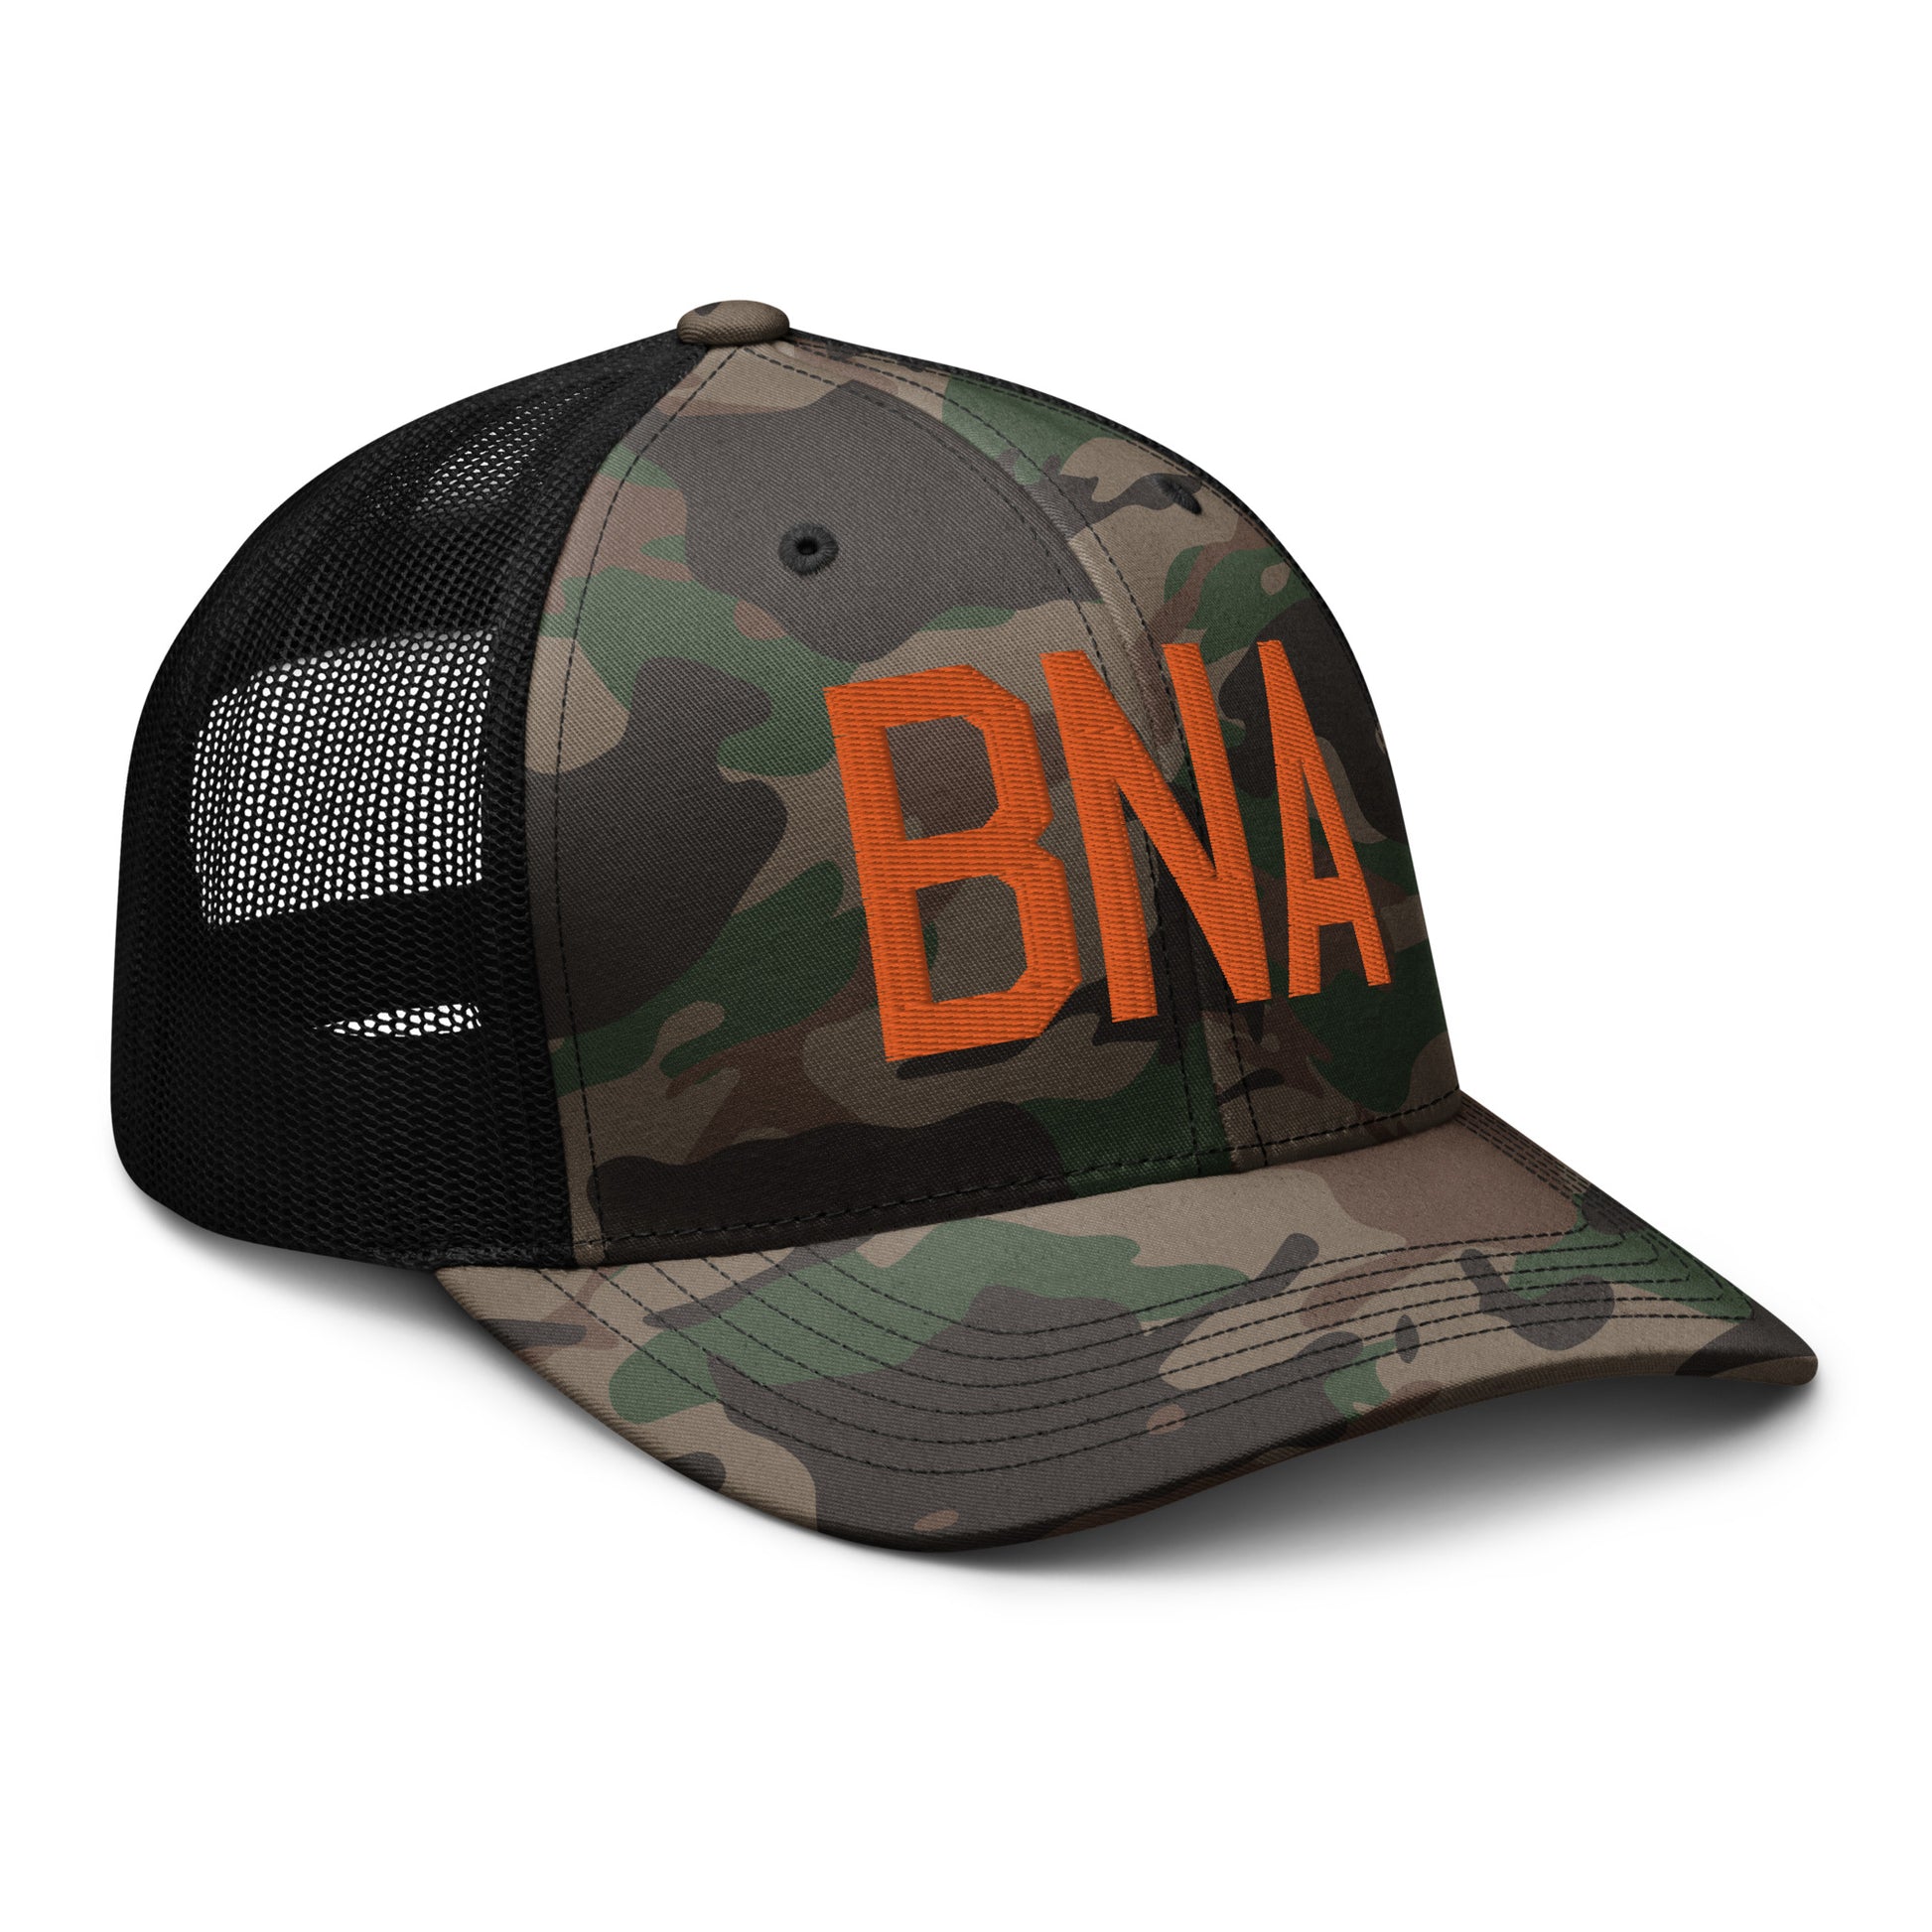 Airport Code Camouflage Trucker Hat - Orange • BNA Nashville • YHM Designs - Image 12